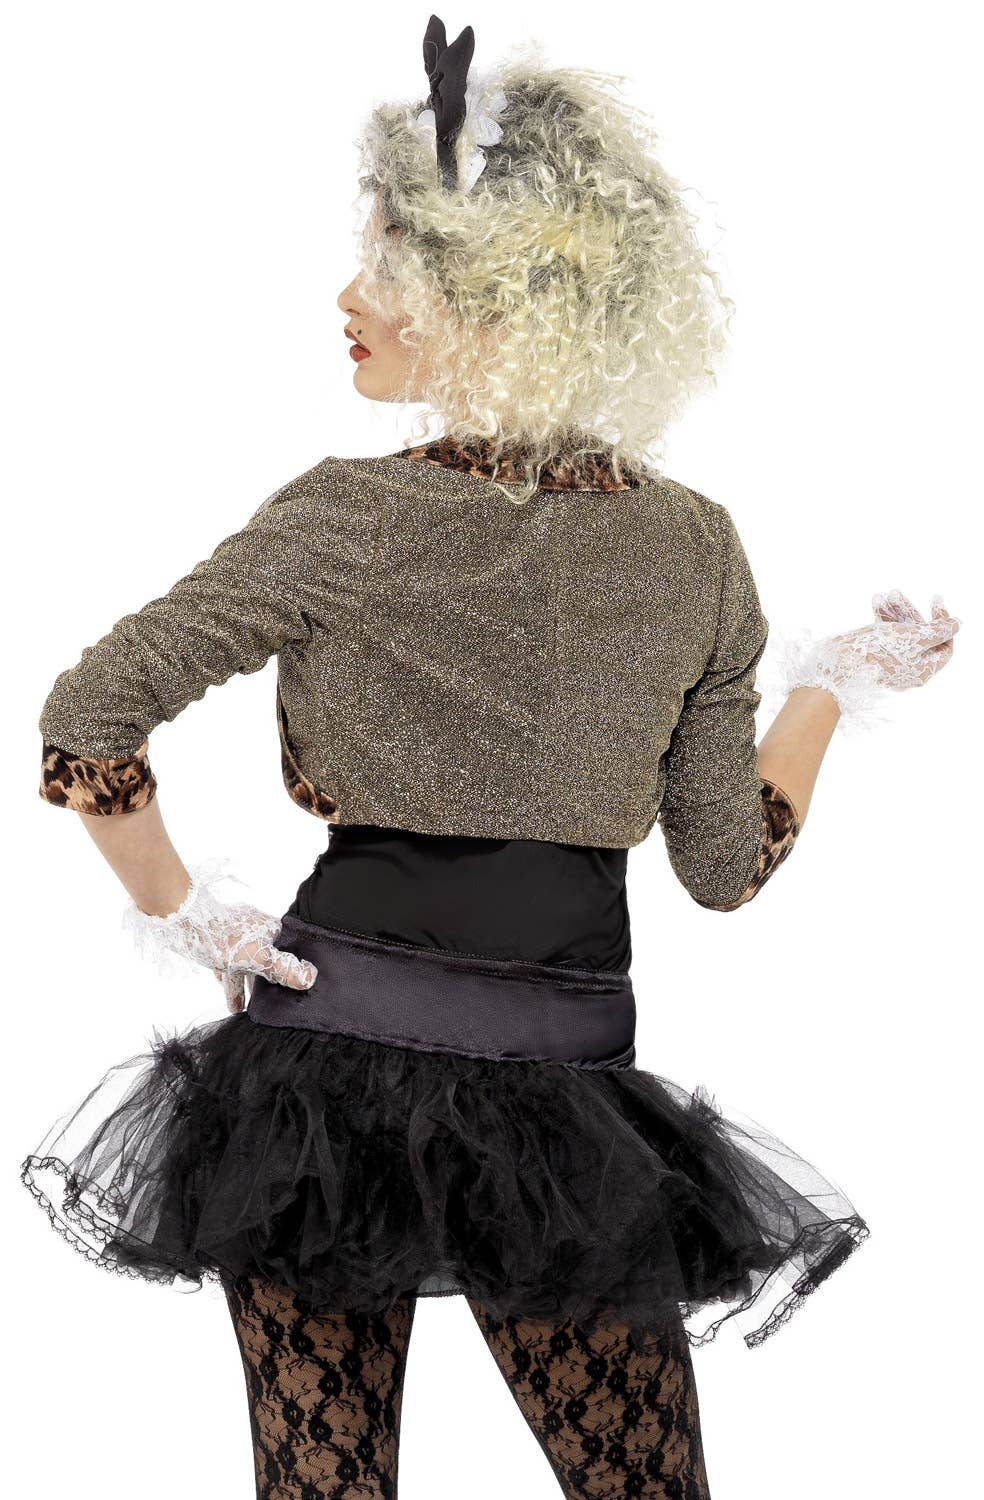 Madonna Desperately Seeking Susan 80's Costume Image 3